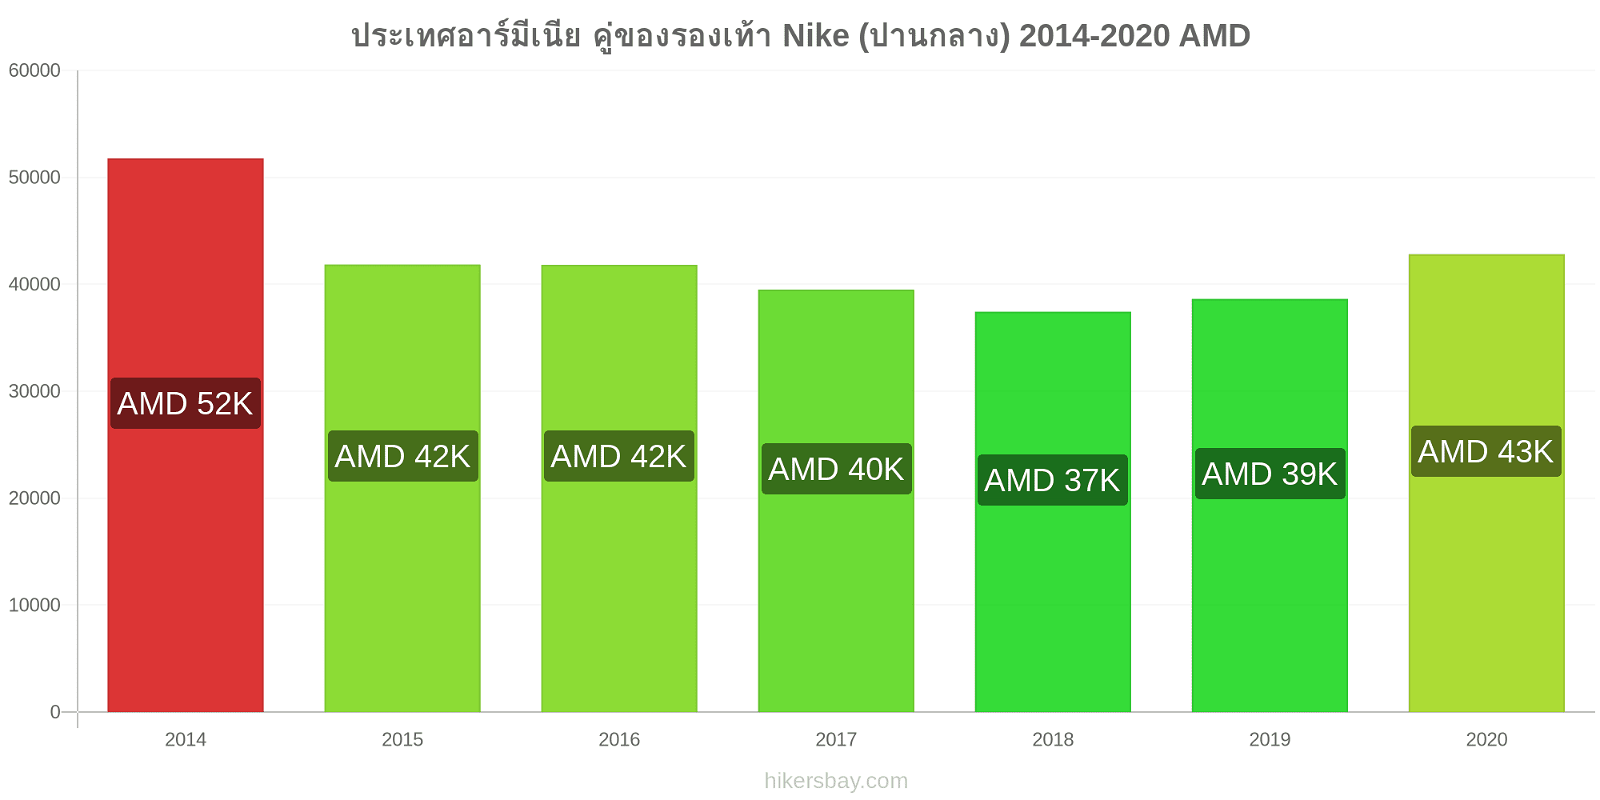 ประเทศอาร์มีเนีย การเปลี่ยนแปลงราคา คู่ของรองเท้า Nike (ปานกลาง) hikersbay.com